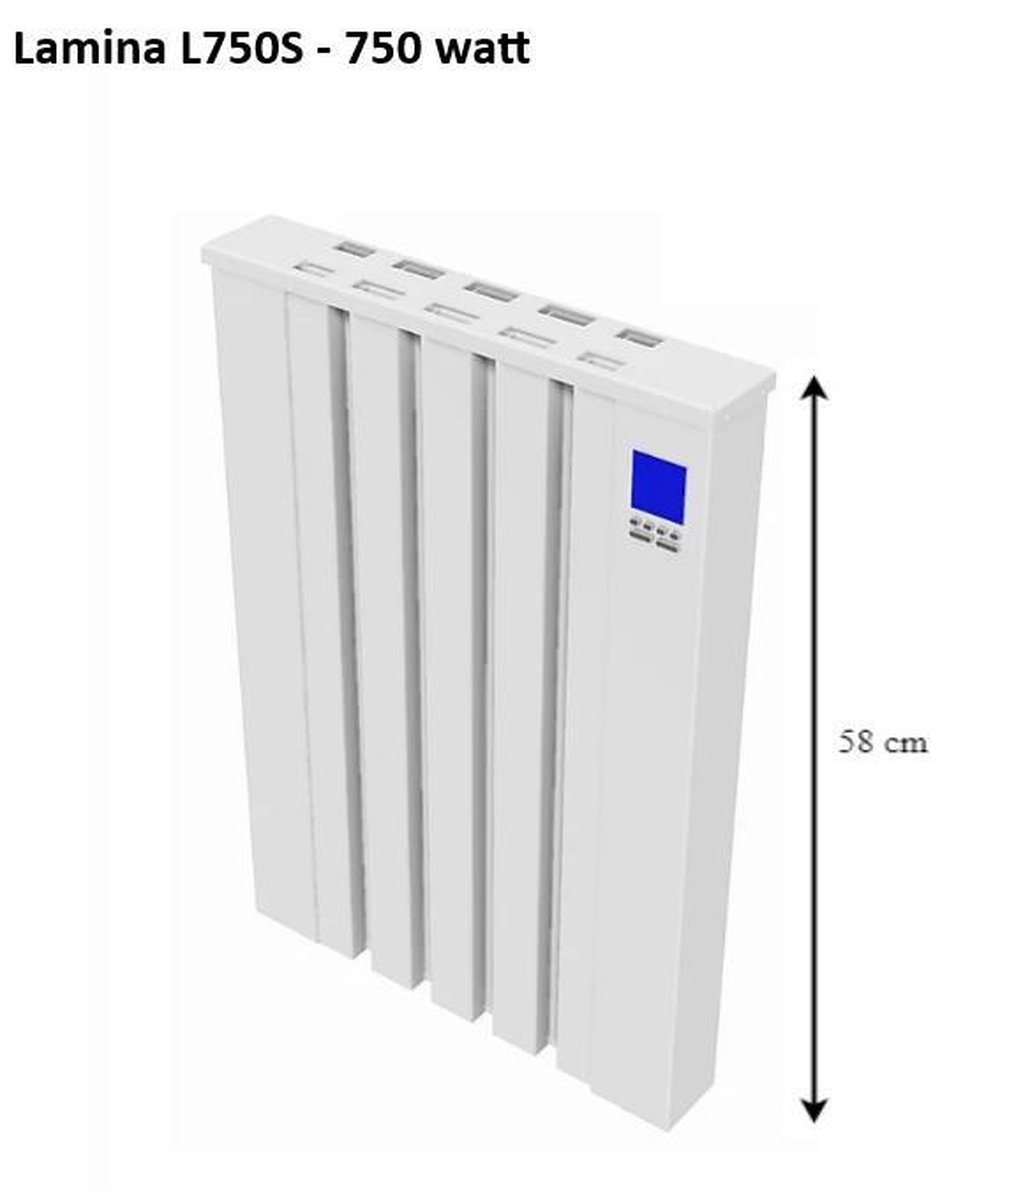 Speksteenradiator;Lamina Electrische radiator met koalitsteen 750 Watt ; Voor ca | bol.com